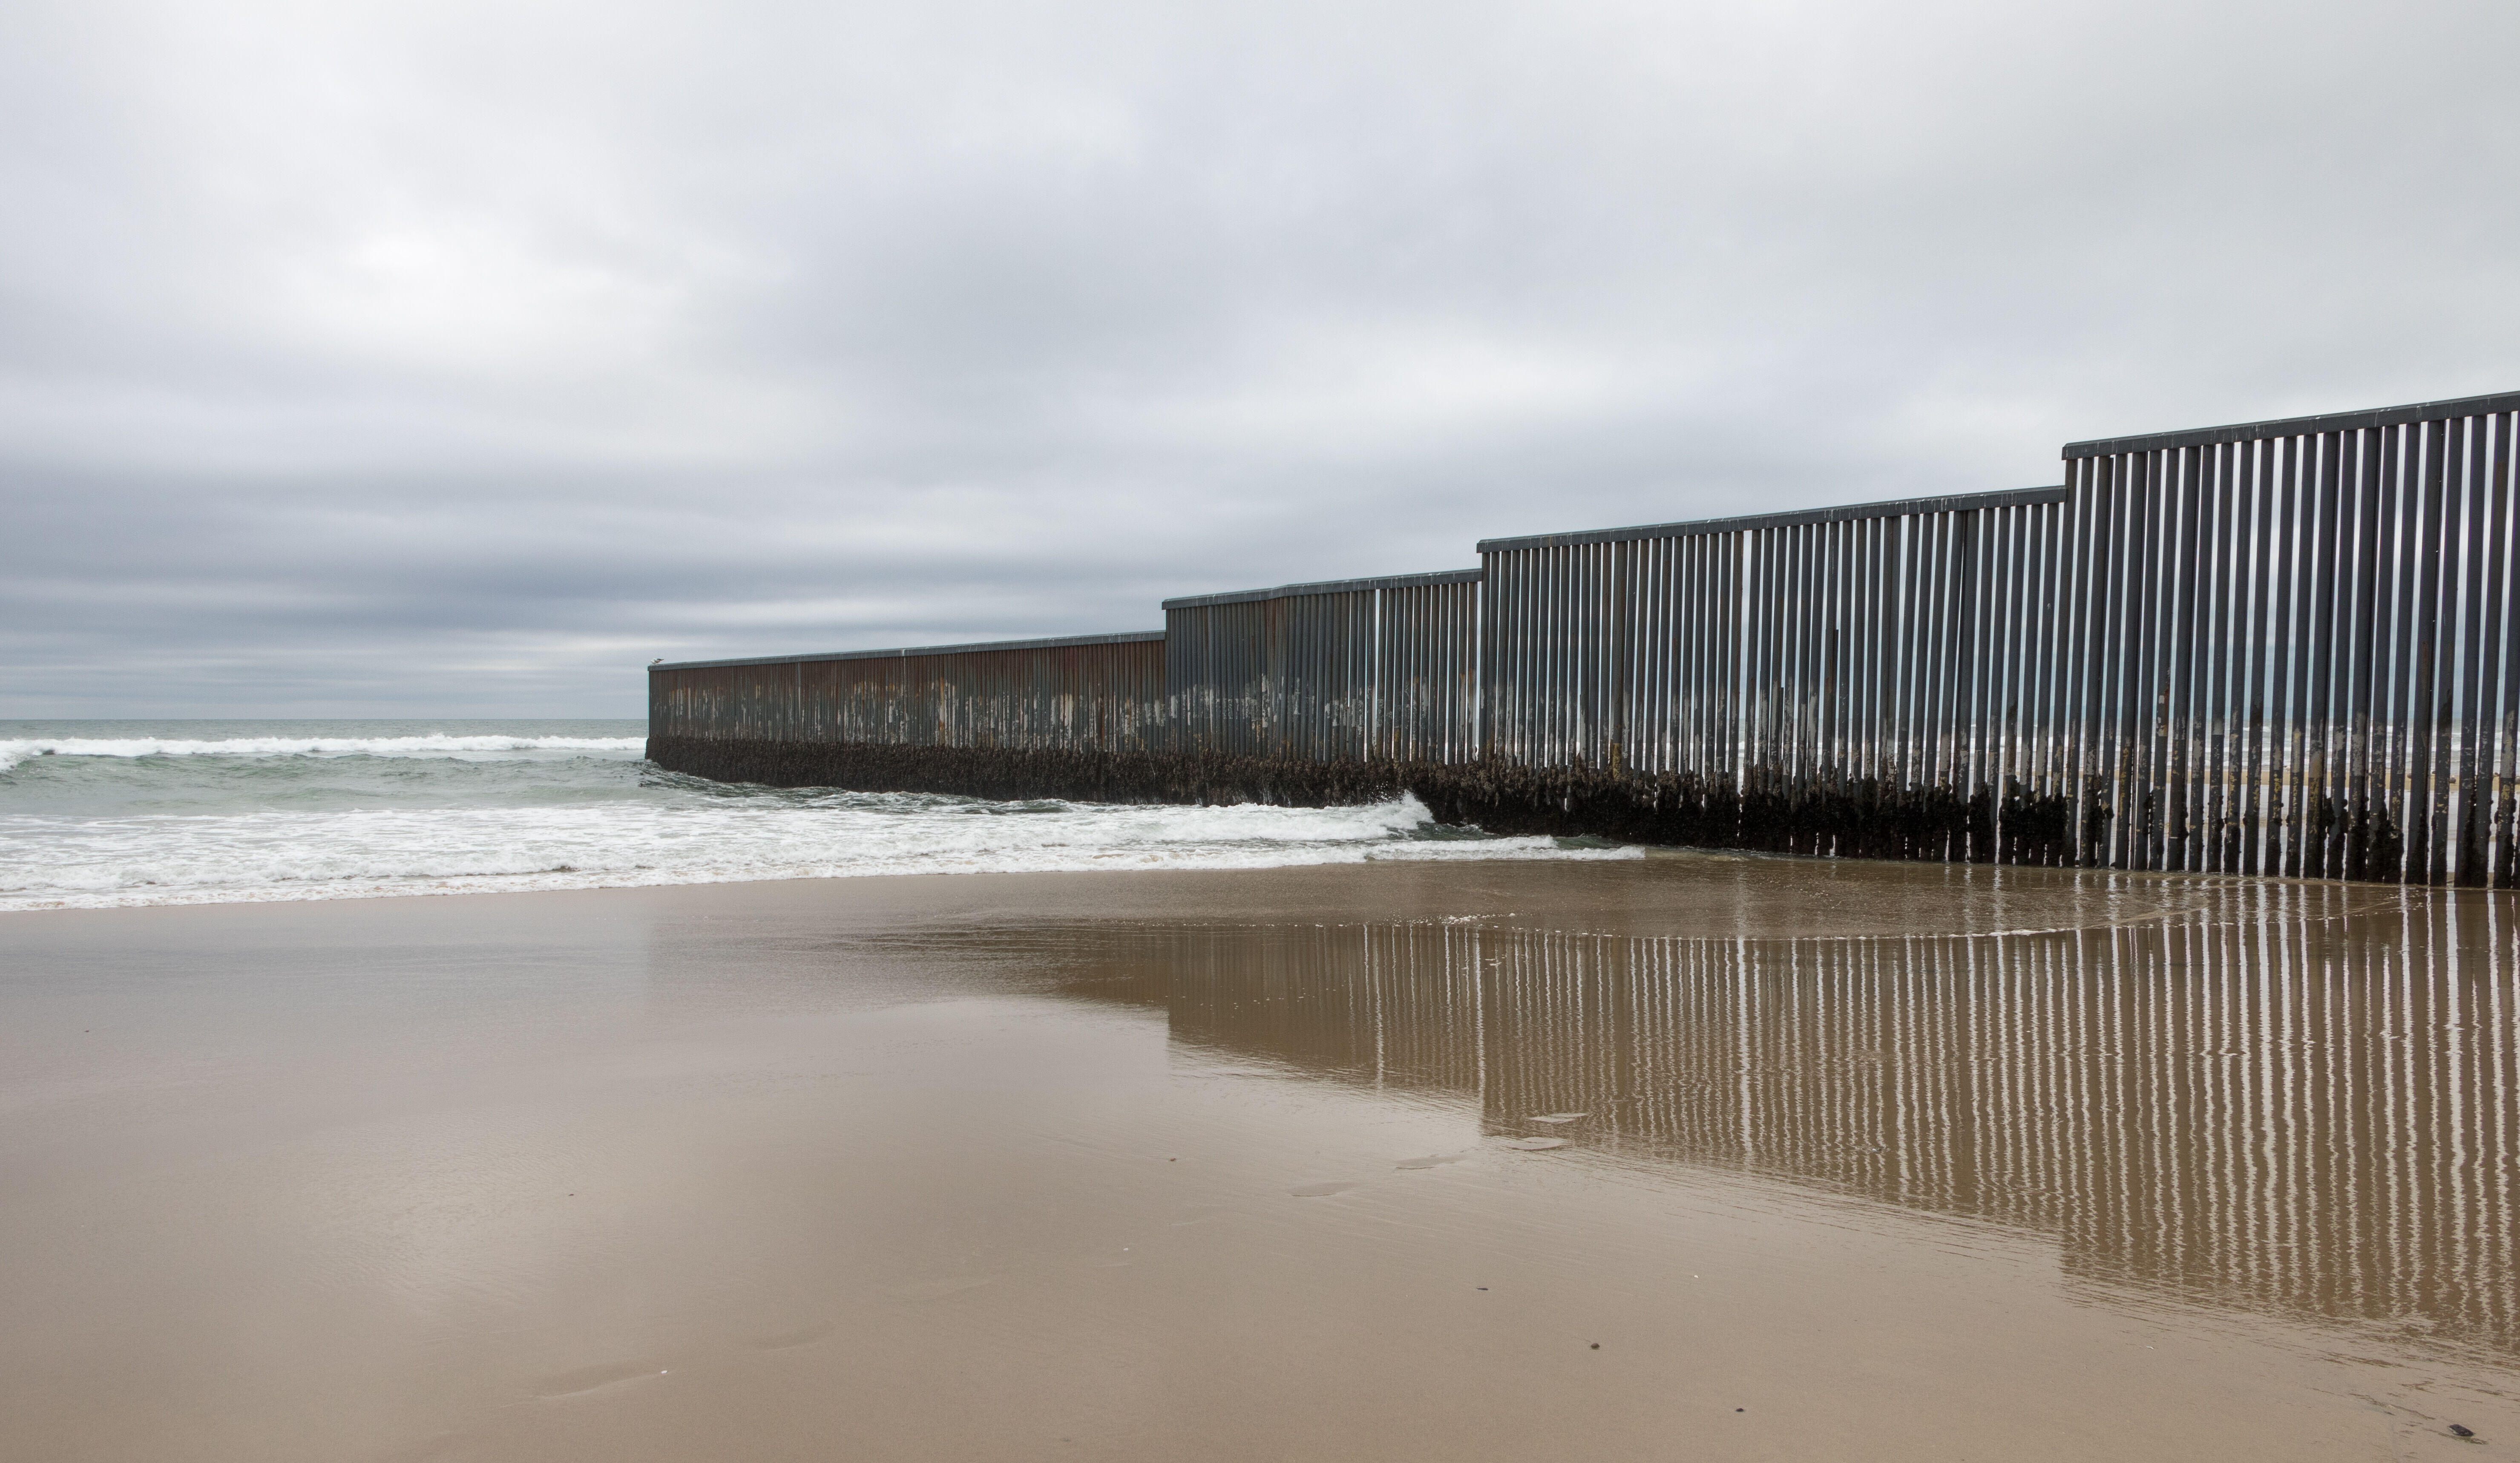 En una playa en la frontera entre Estados Unidos y México en Tijuana, México, un muro fronterizo se extiende hacia el océano.